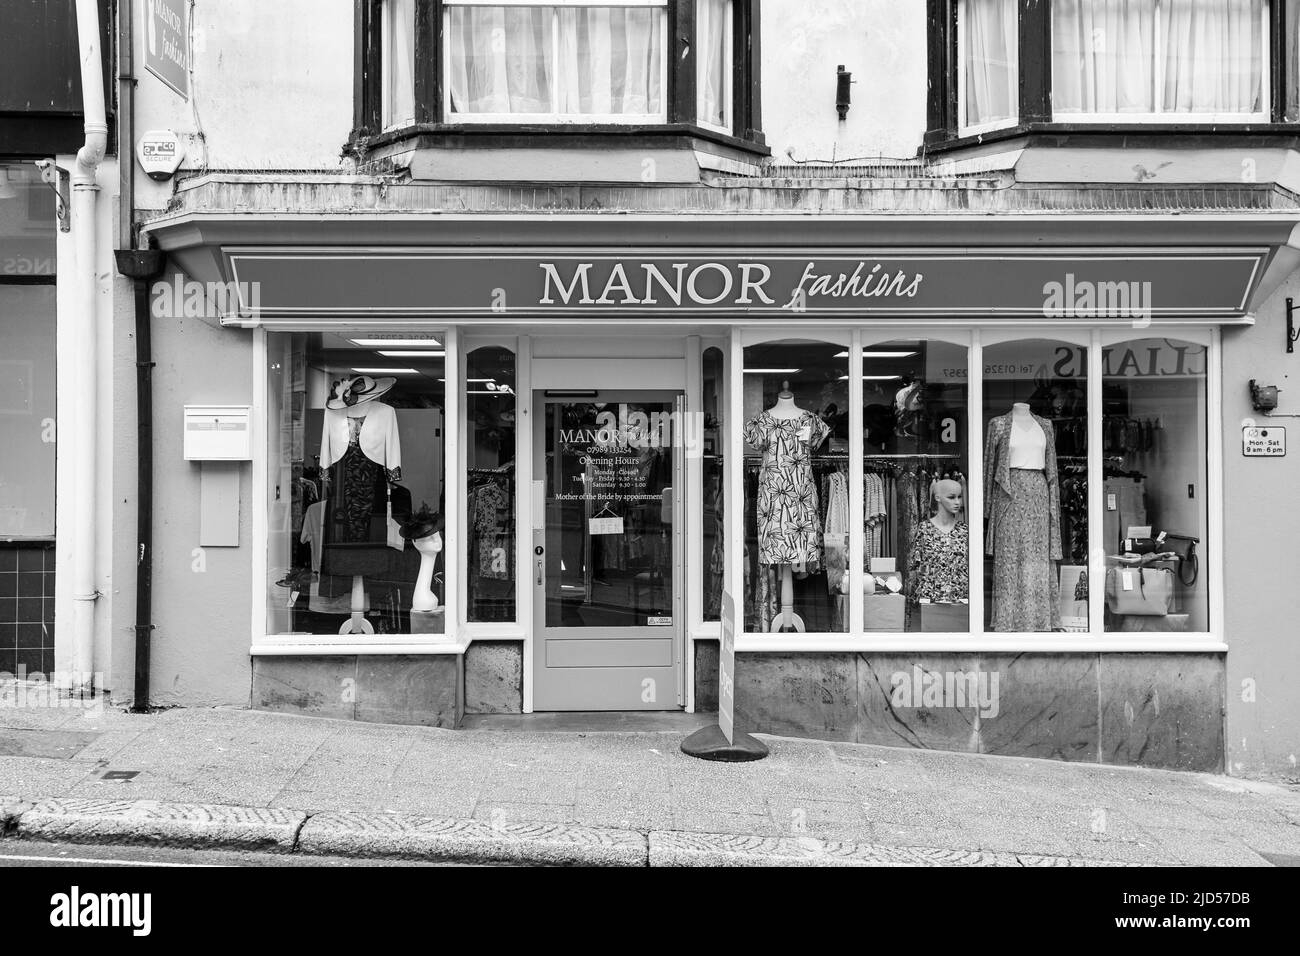 Punti vendita al dettaglio (Manor Fashions) in Meneage Street, Helston, Cornovaglia, Inghilterra Foto Stock